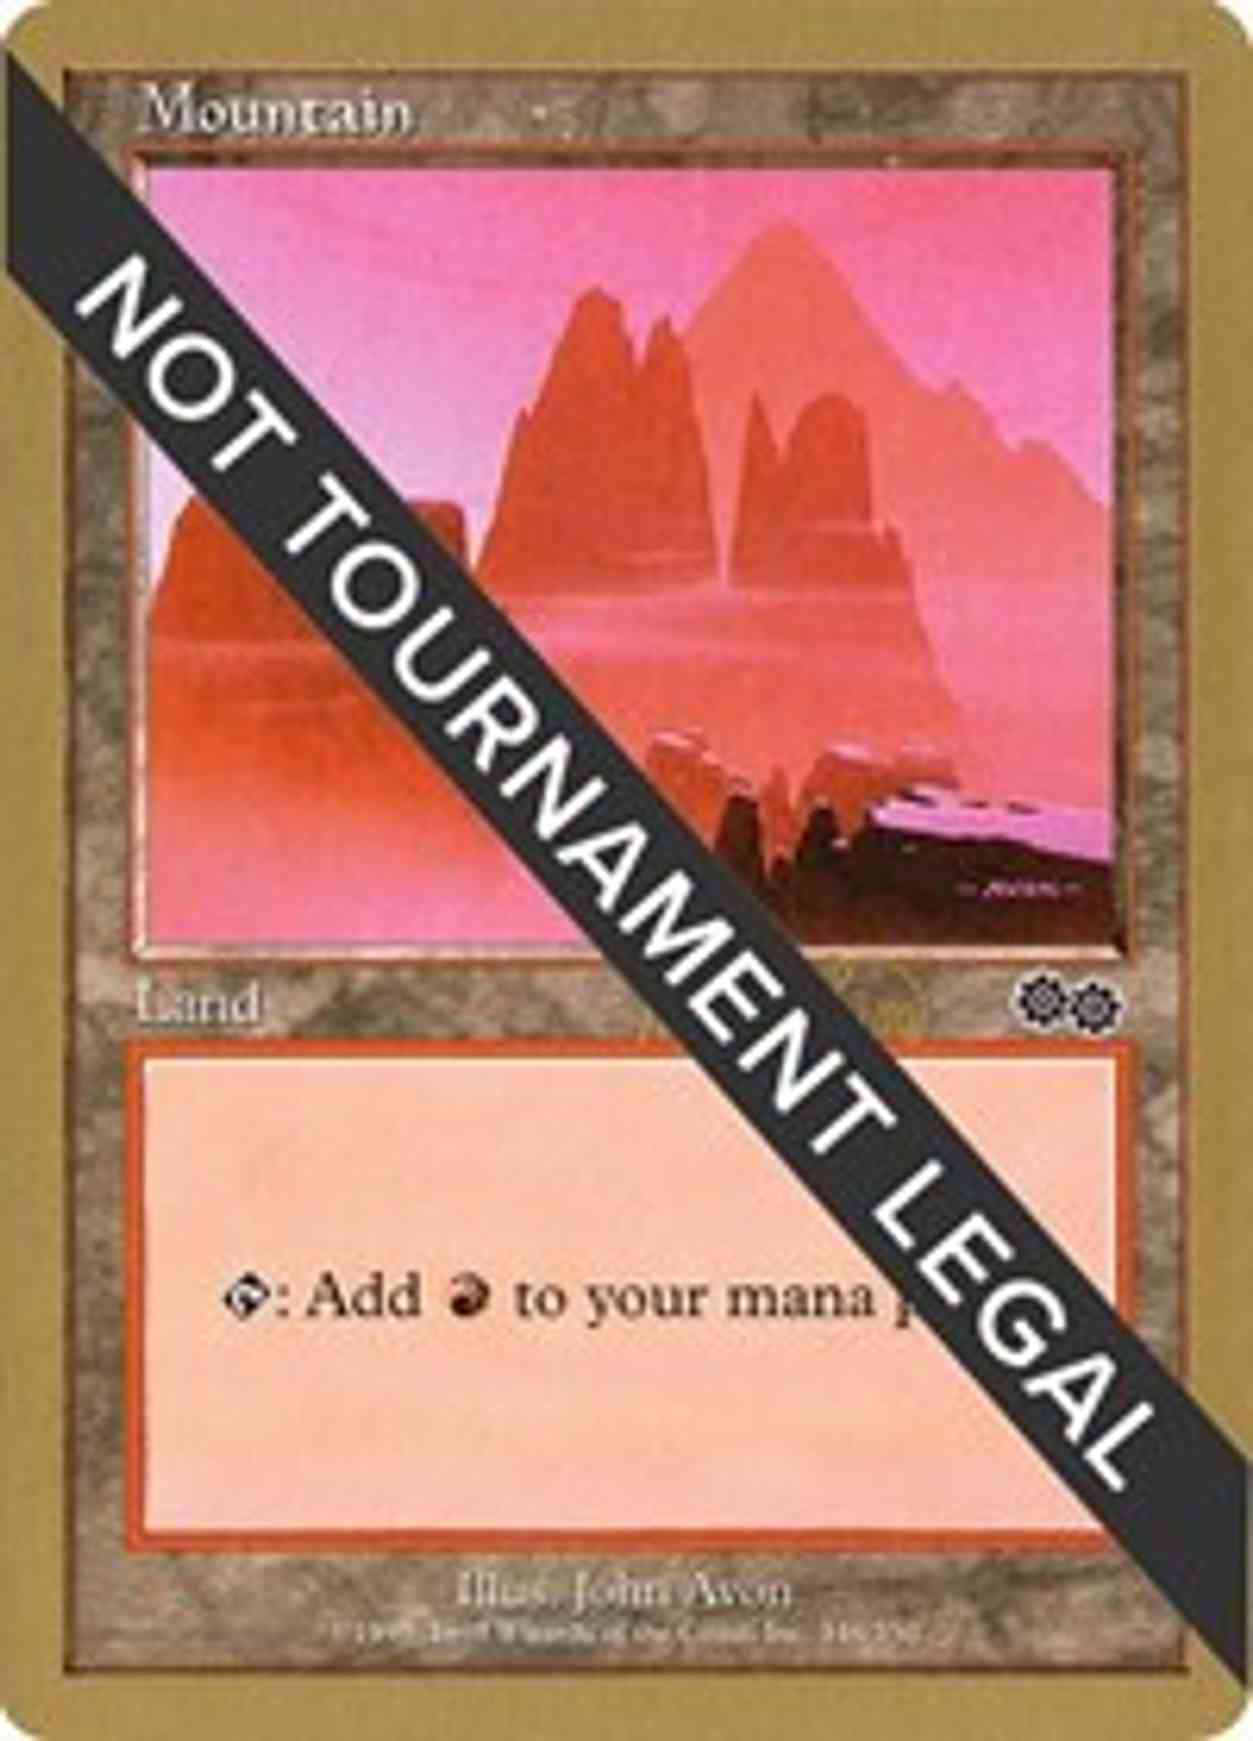 Mountain (346) - 1999 Mark Le Pine (USG) magic card front